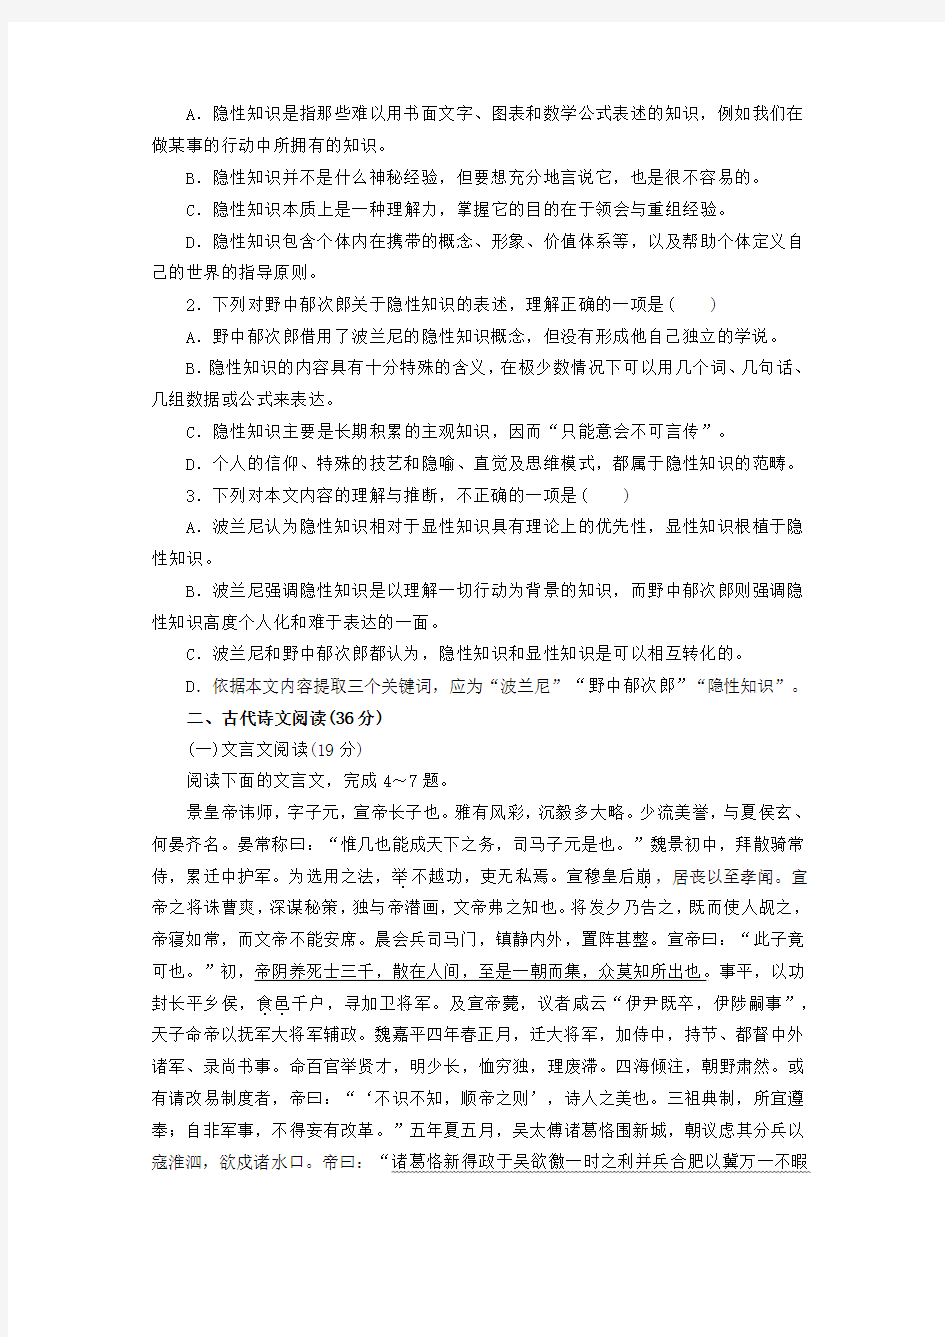 人教版高中语文选修《中国小说欣赏》综合测试卷(一)附答案解析